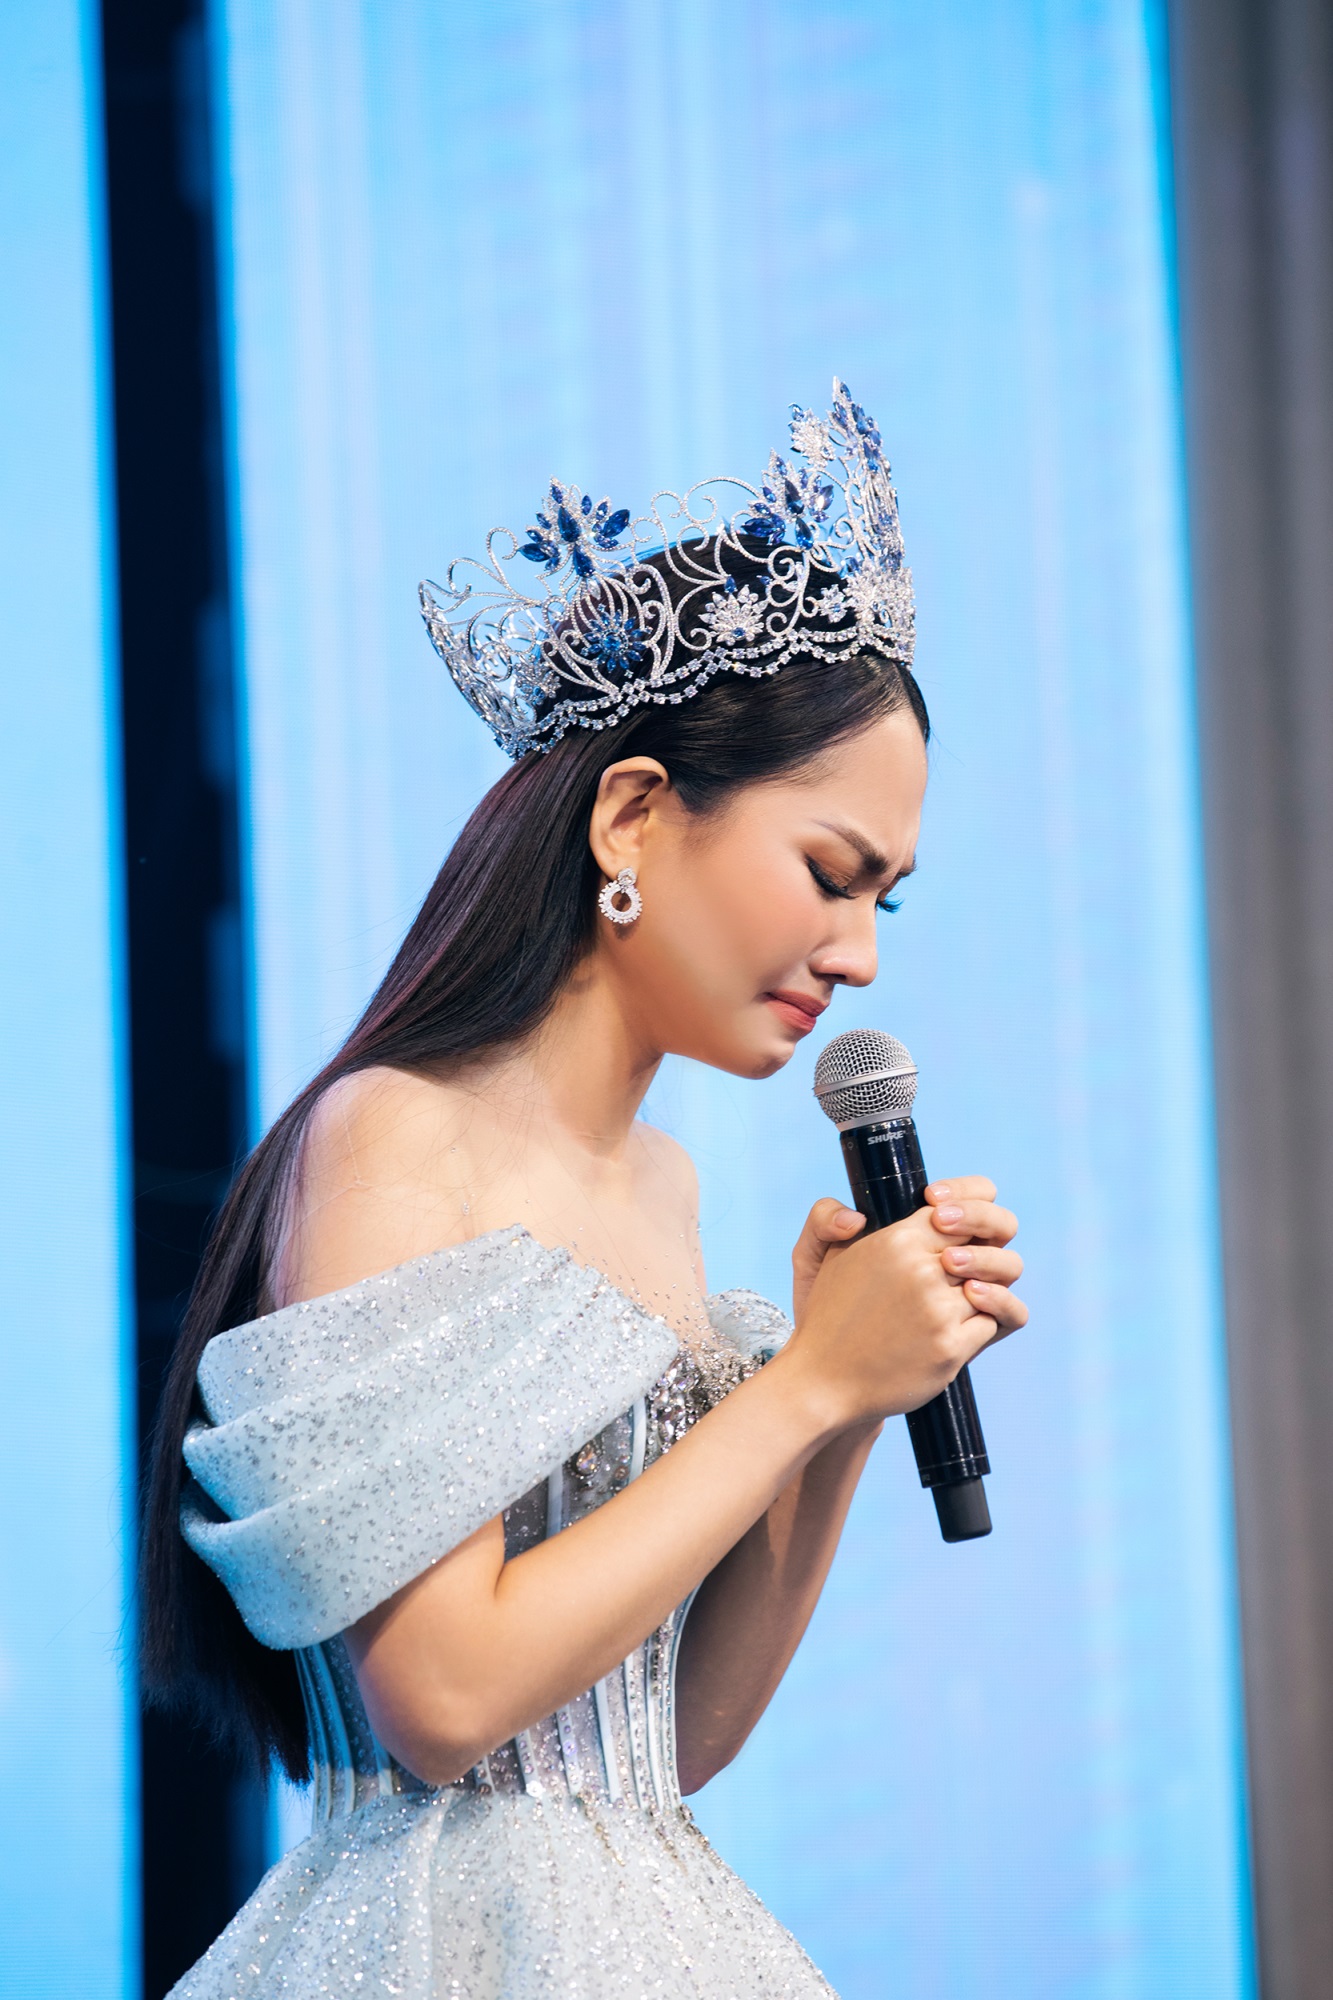 Tranh cãi quanh việc Hoa hậu Mai Phương bán vương miện: 'Trời, vậy đấu giá để làm gì nhỉ' - Ảnh 4